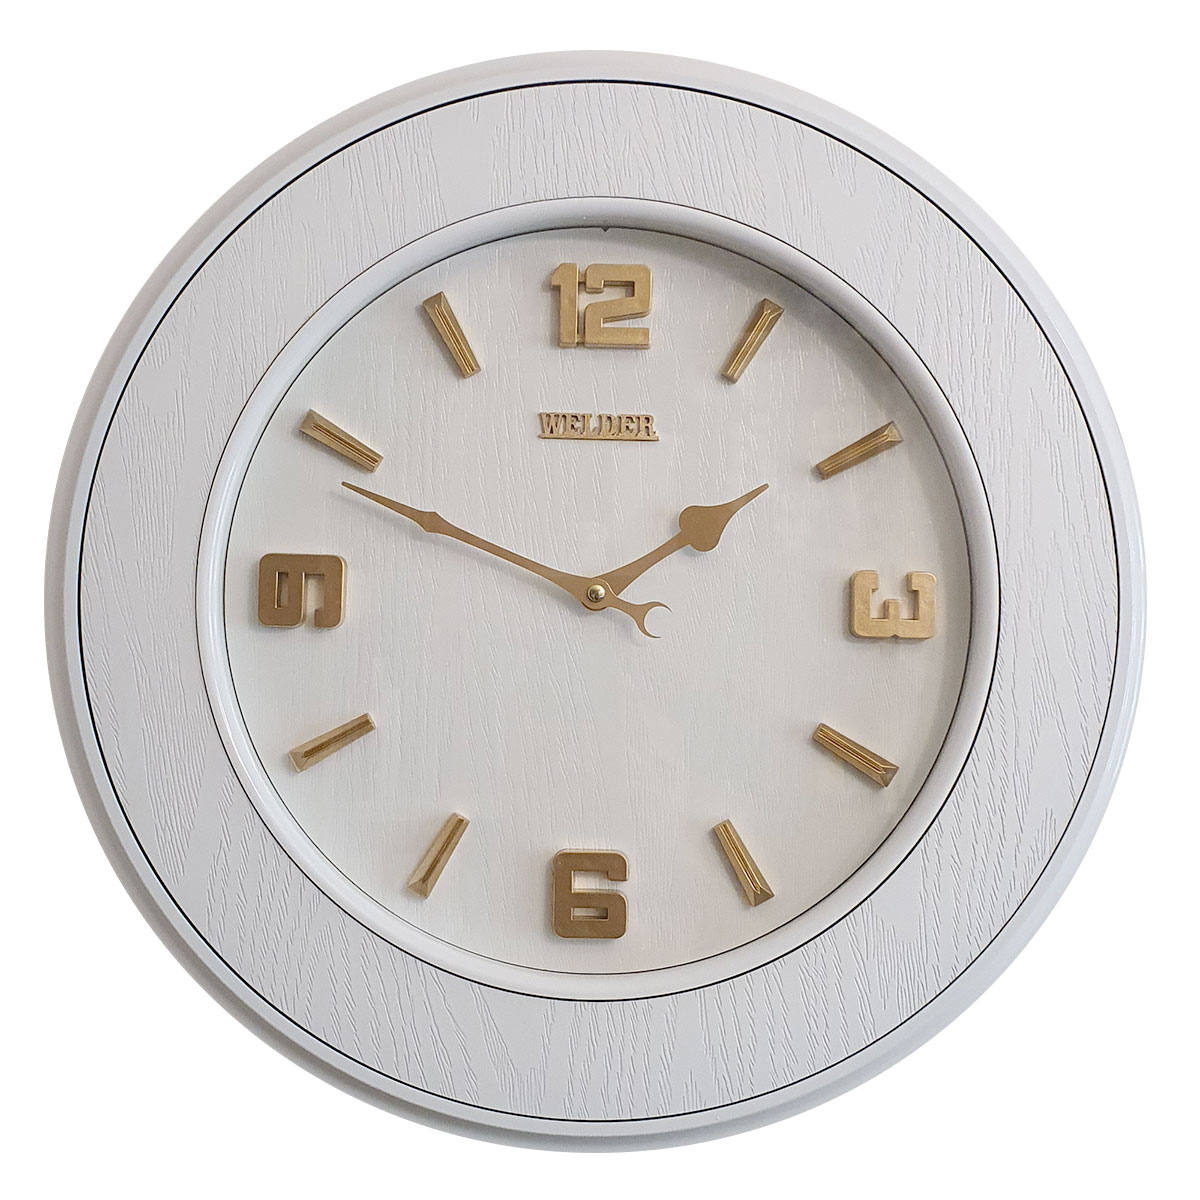 آنباکس ساعت دیواری ولدر مدل 300-W توسط نازنین ارجمندفرد در تاریخ ۲۵ مرداد ۱۳۹۹